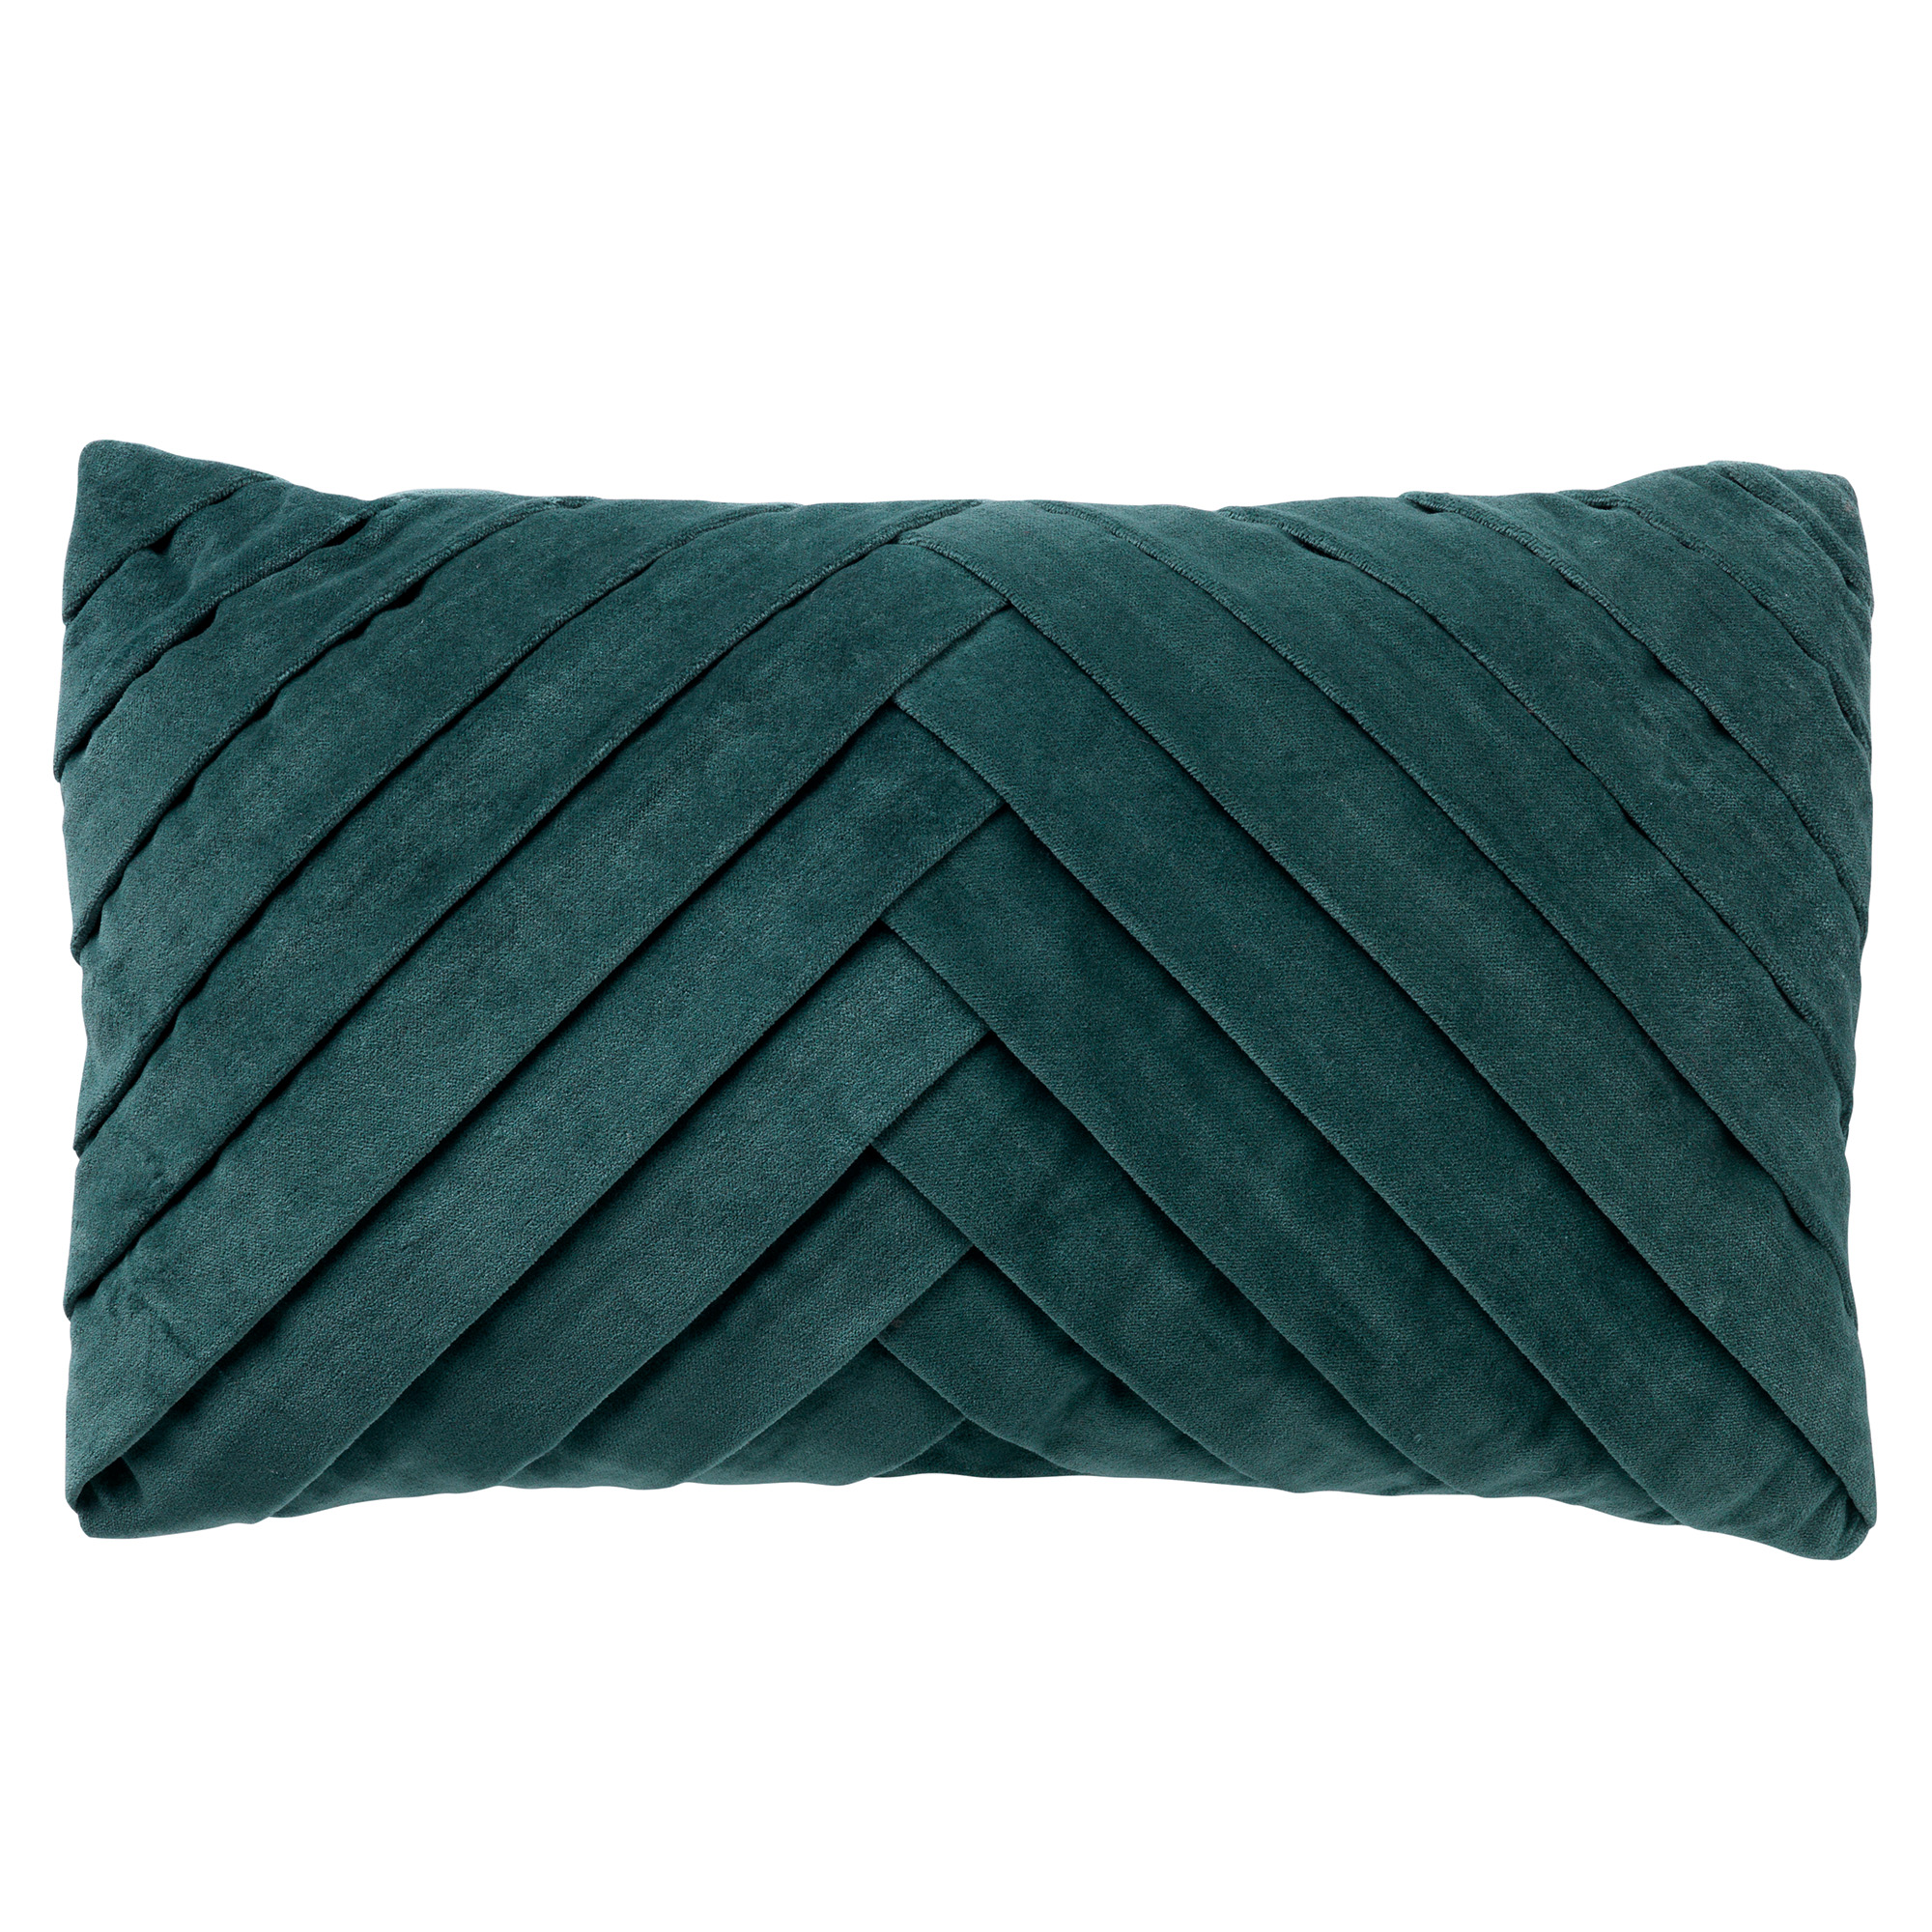 FEMM - Kussenhoes velvet 30x50 cm - Sagebrush Green - groen